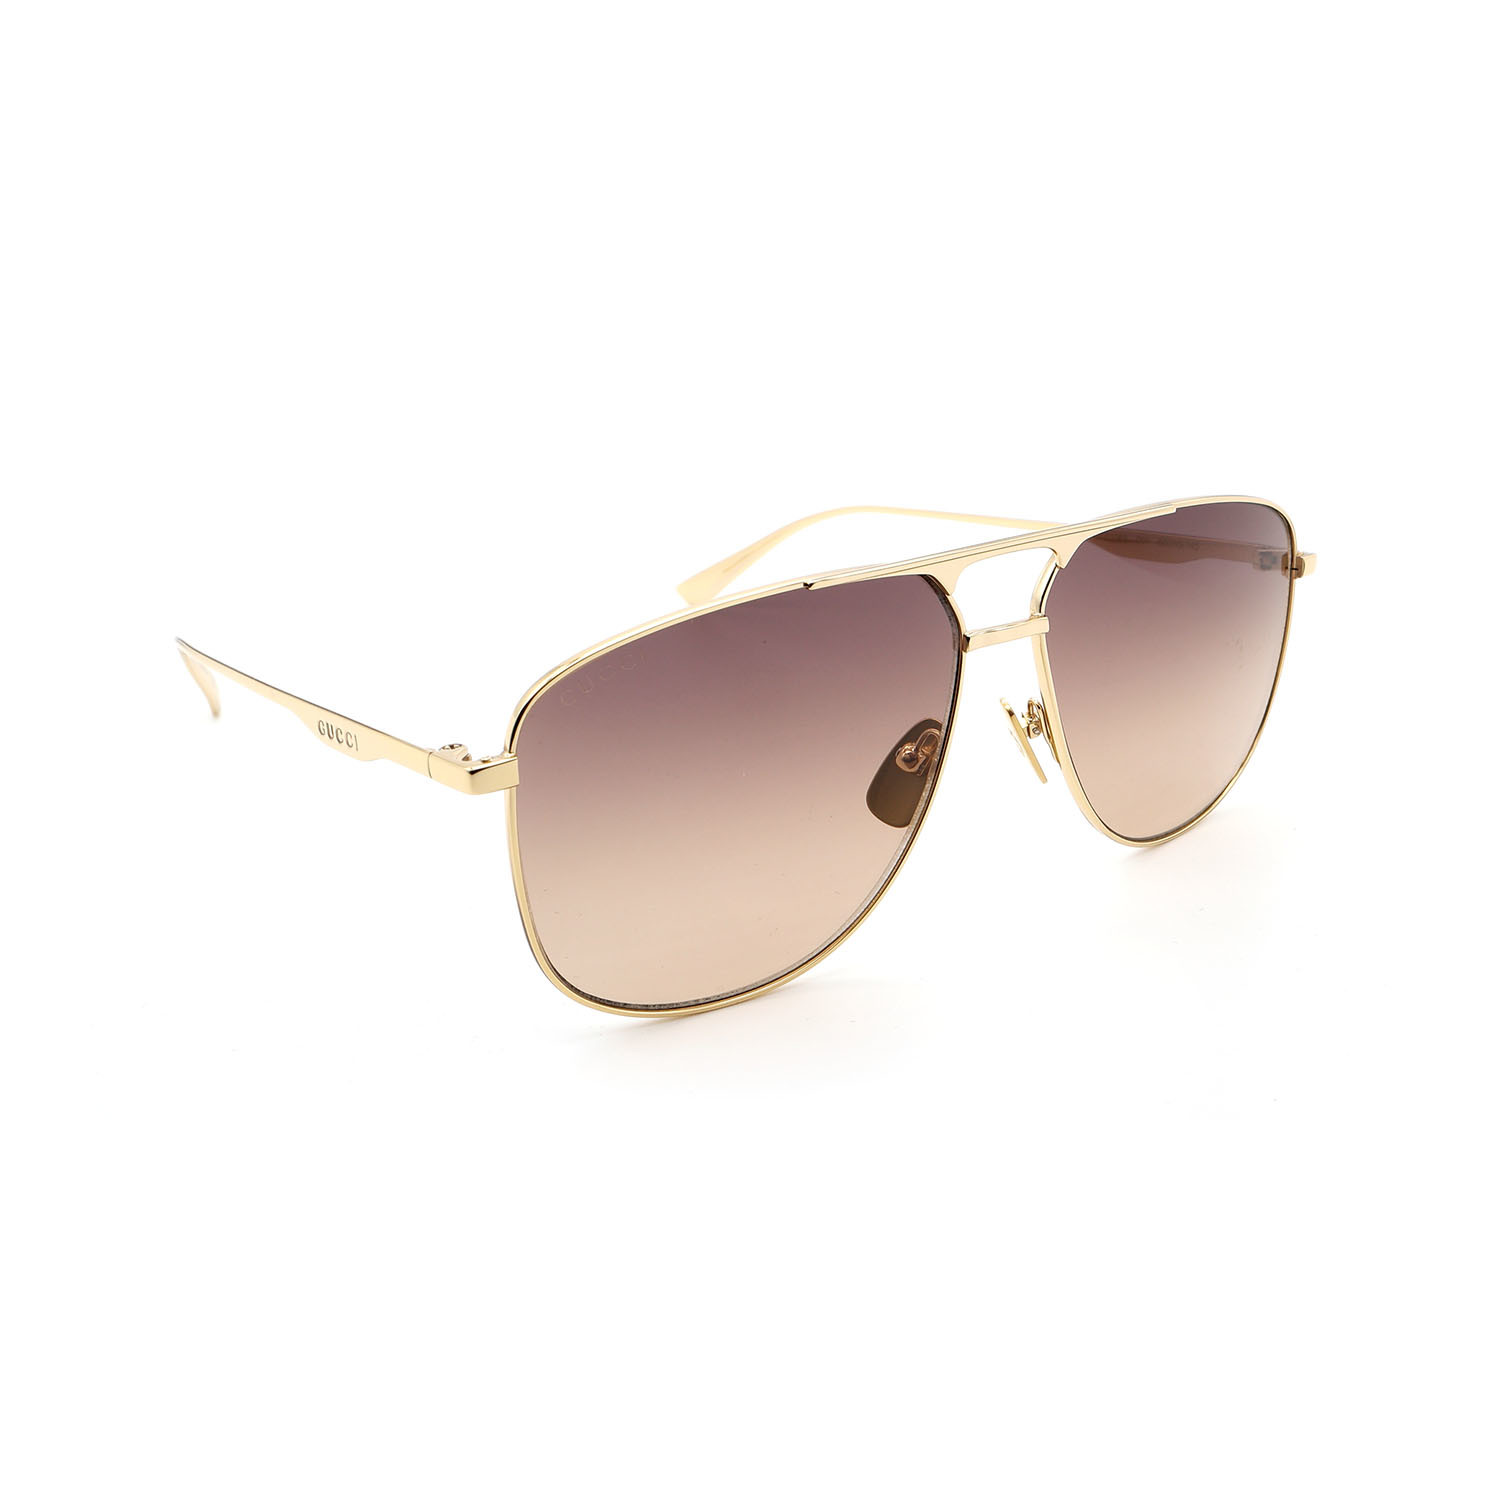 Men's GG0336S-001 Aviator Sunglasses // Gold + Brown Gradient - Gucci ...